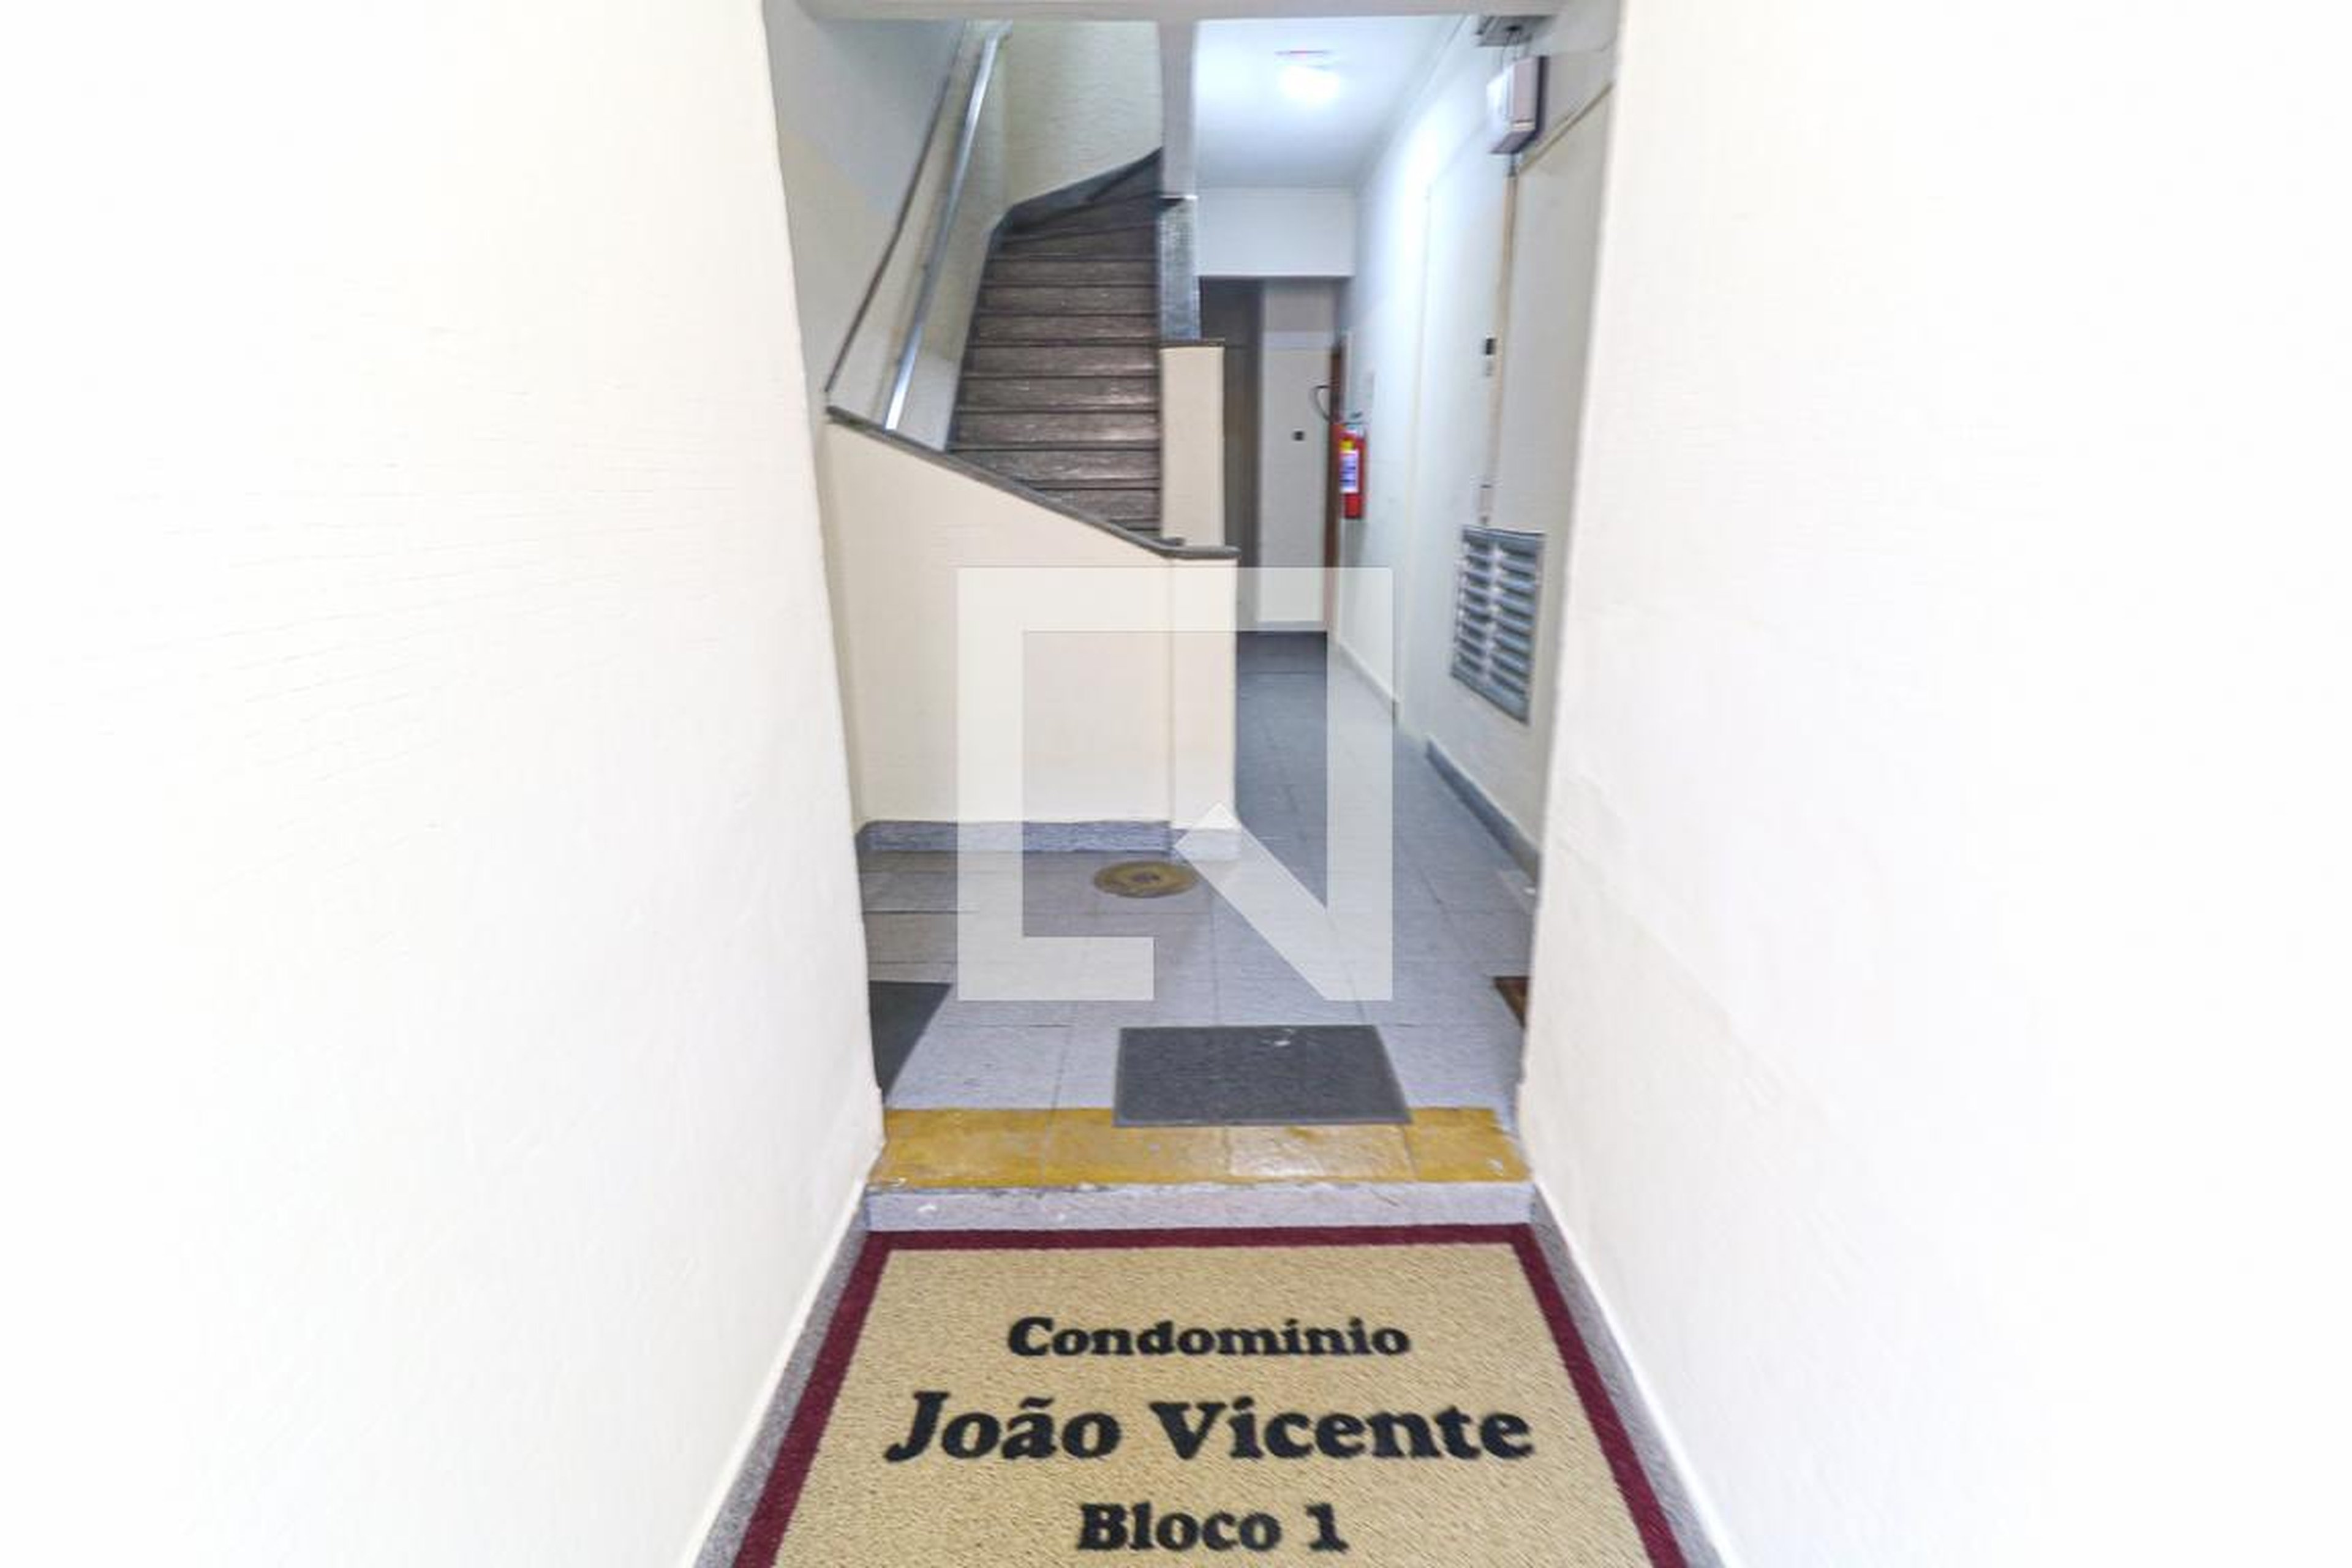 Hall de Entrada - João Vicente